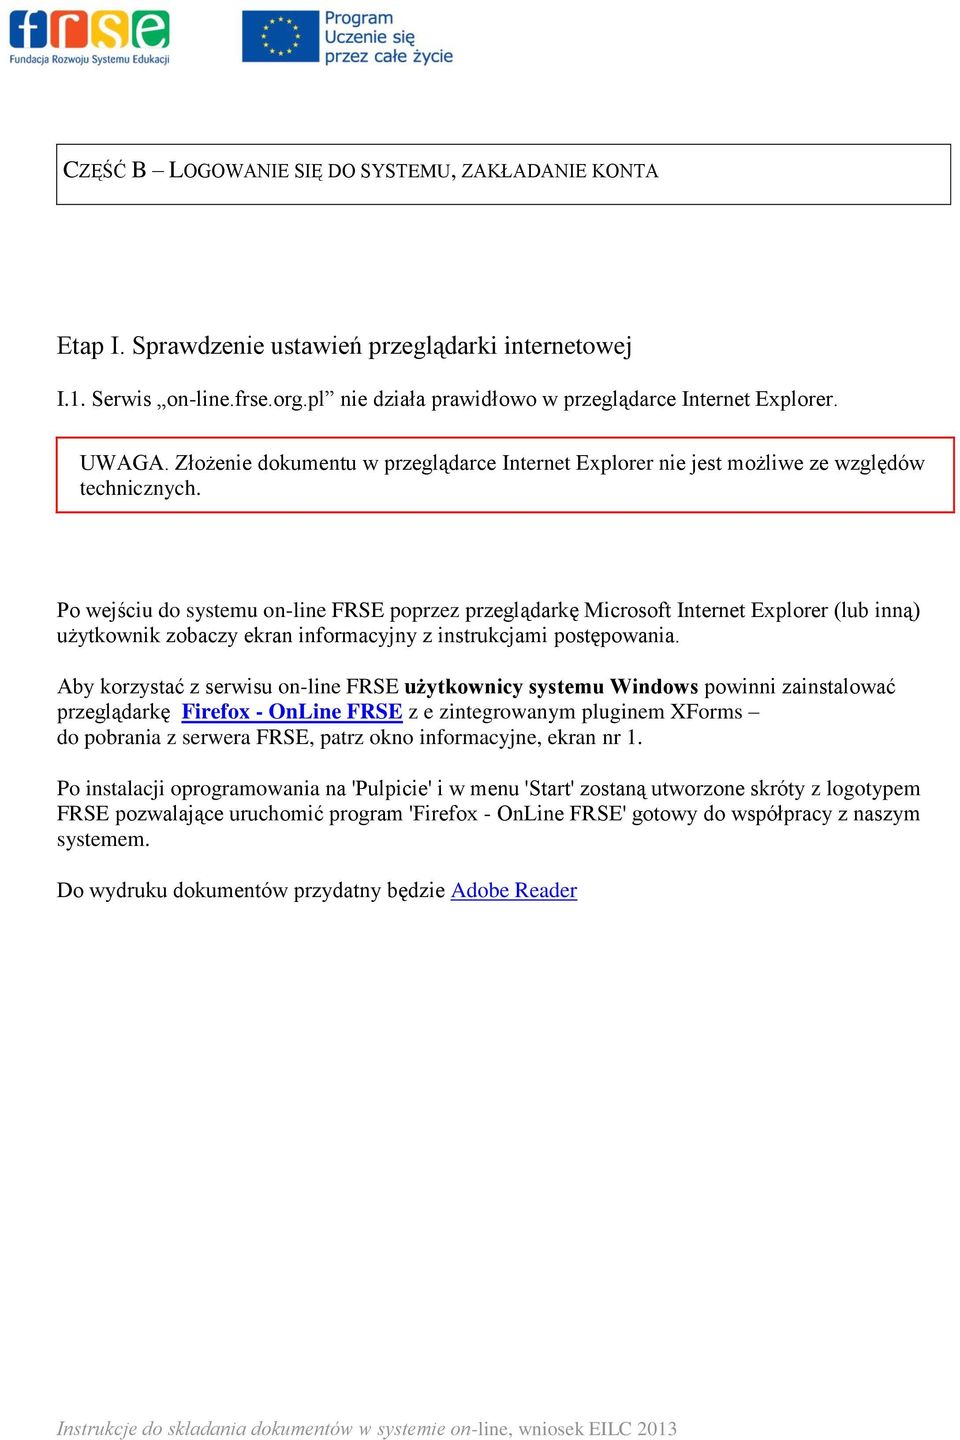 Po wejściu do systemu on-line FRSE poprzez przeglądarkę Microsoft Internet Explorer (lub inną) użytkownik zobaczy ekran informacyjny z instrukcjami postępowania.